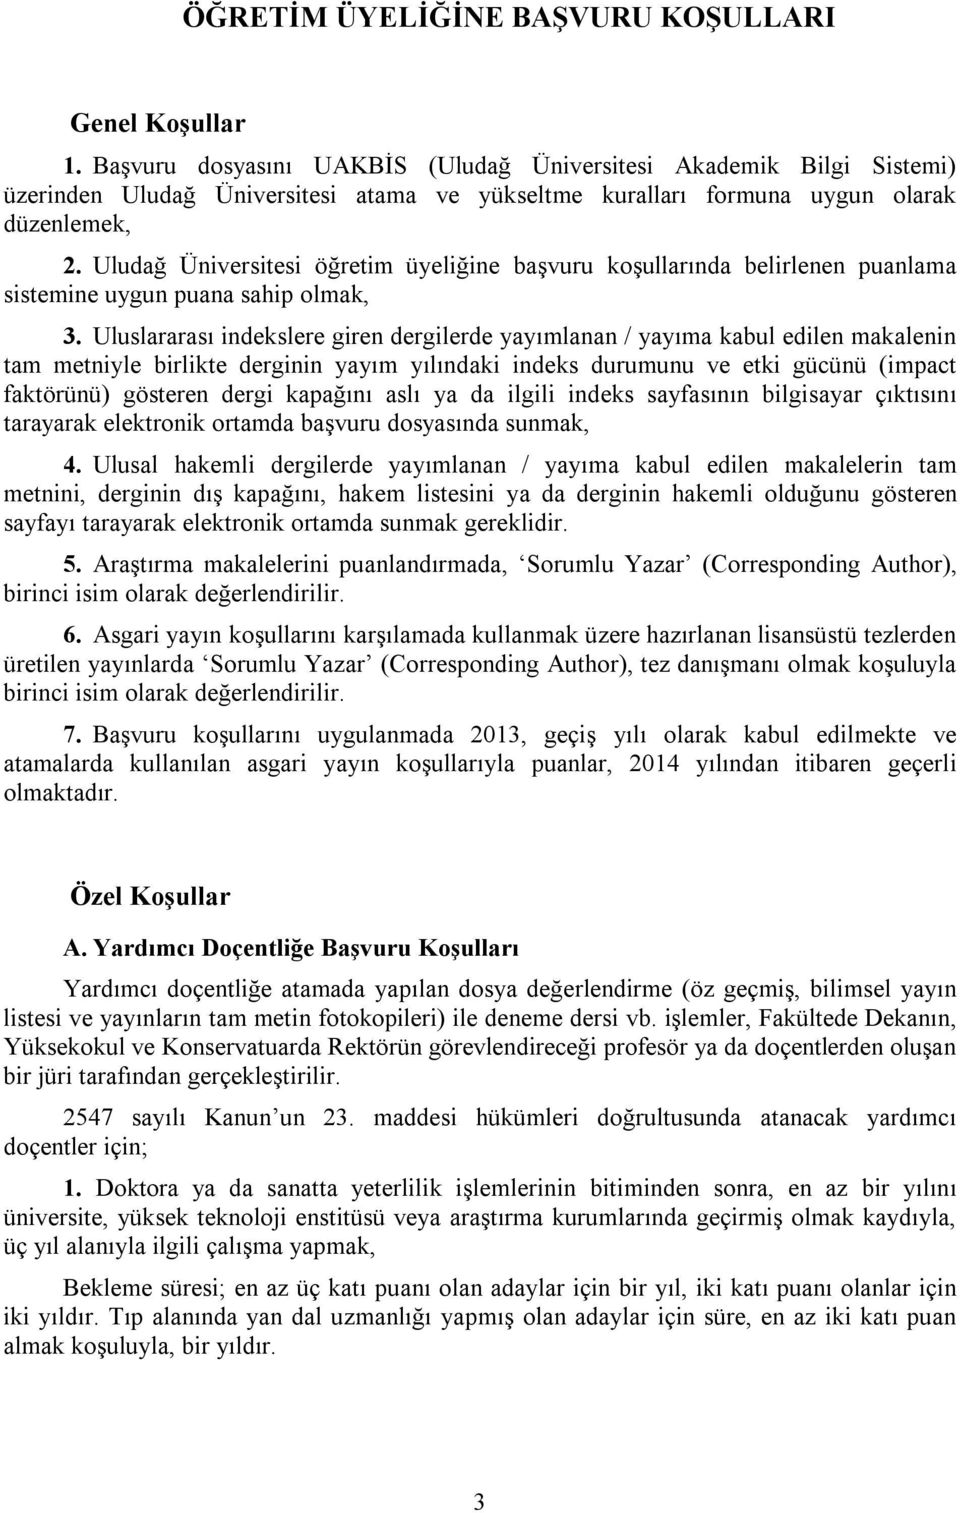 Uludağ Üniversitesi öğretim üyeliğine başvuru koşullarında belirlenen puanlama sistemine uygun puana sahip olmak, 3.